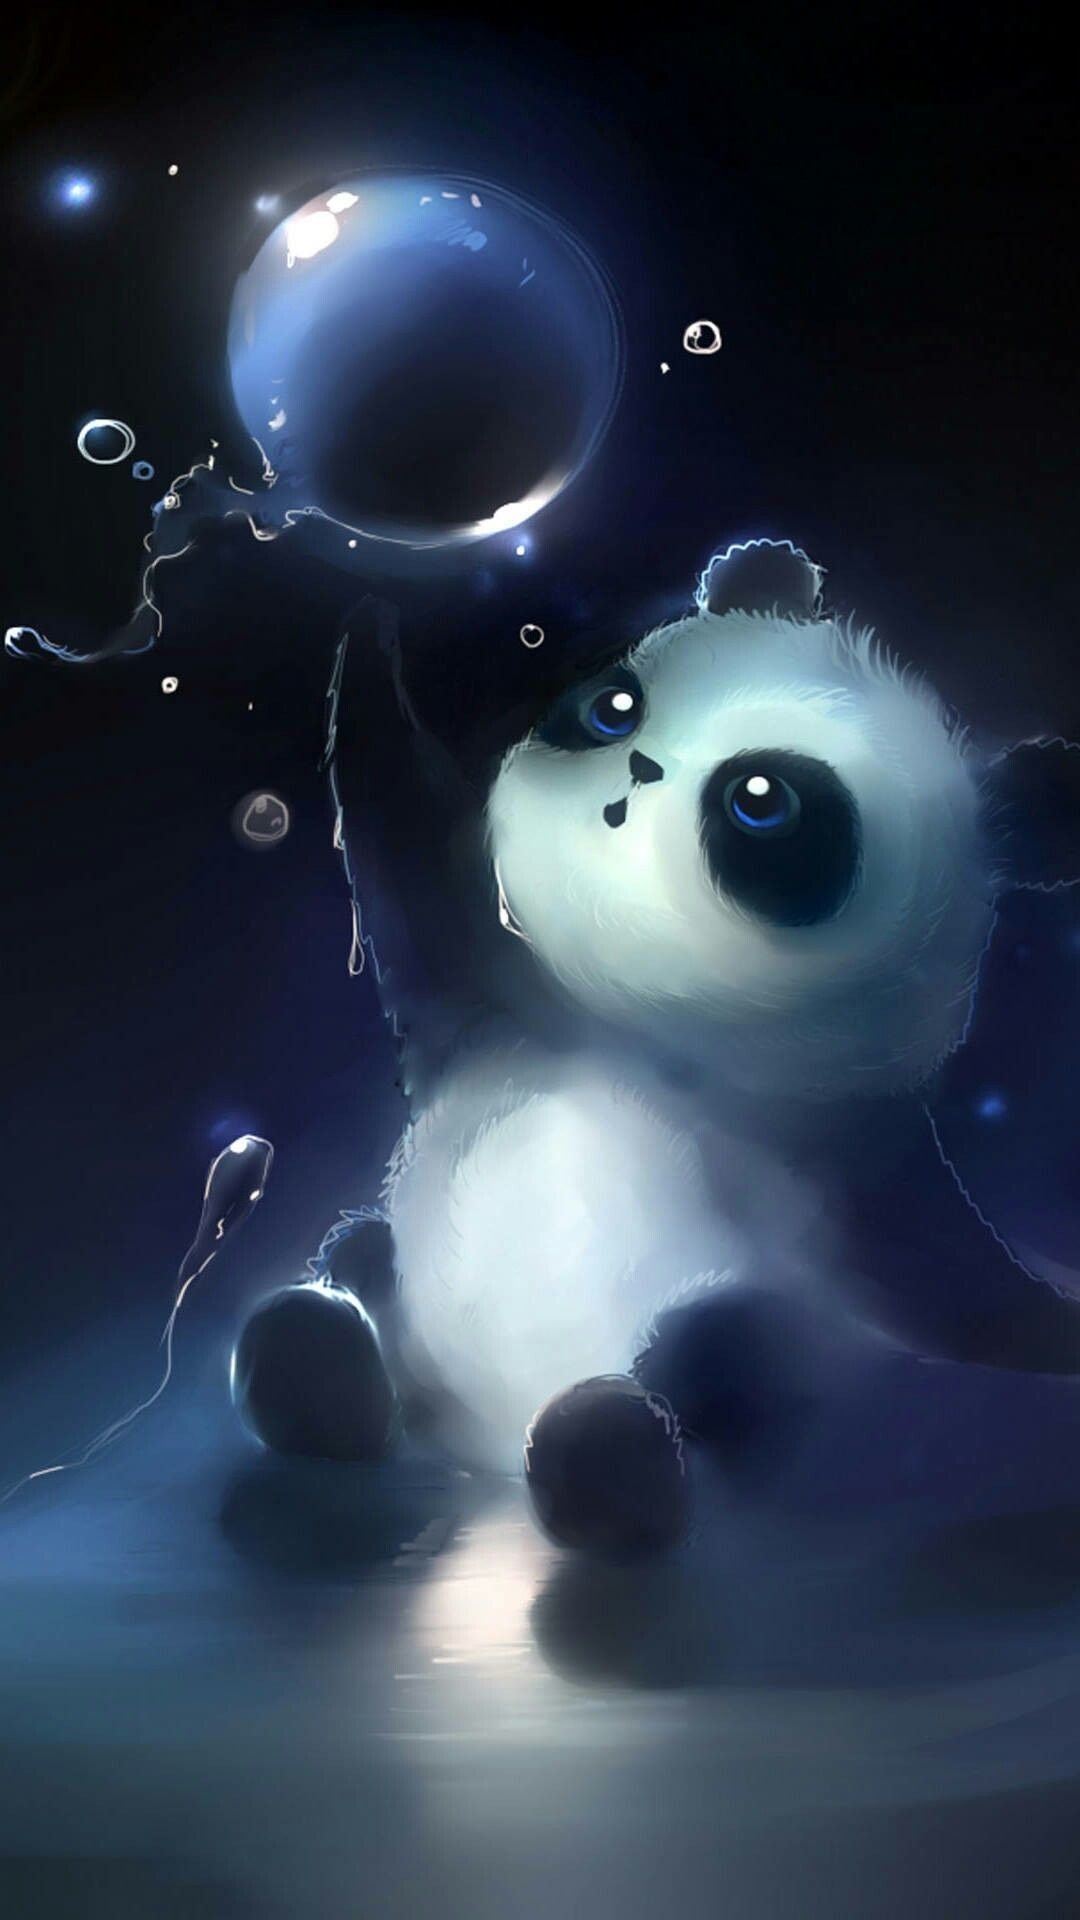 Premium Vector  Panda sitting love cute creative kawaii cartoon mascot logo